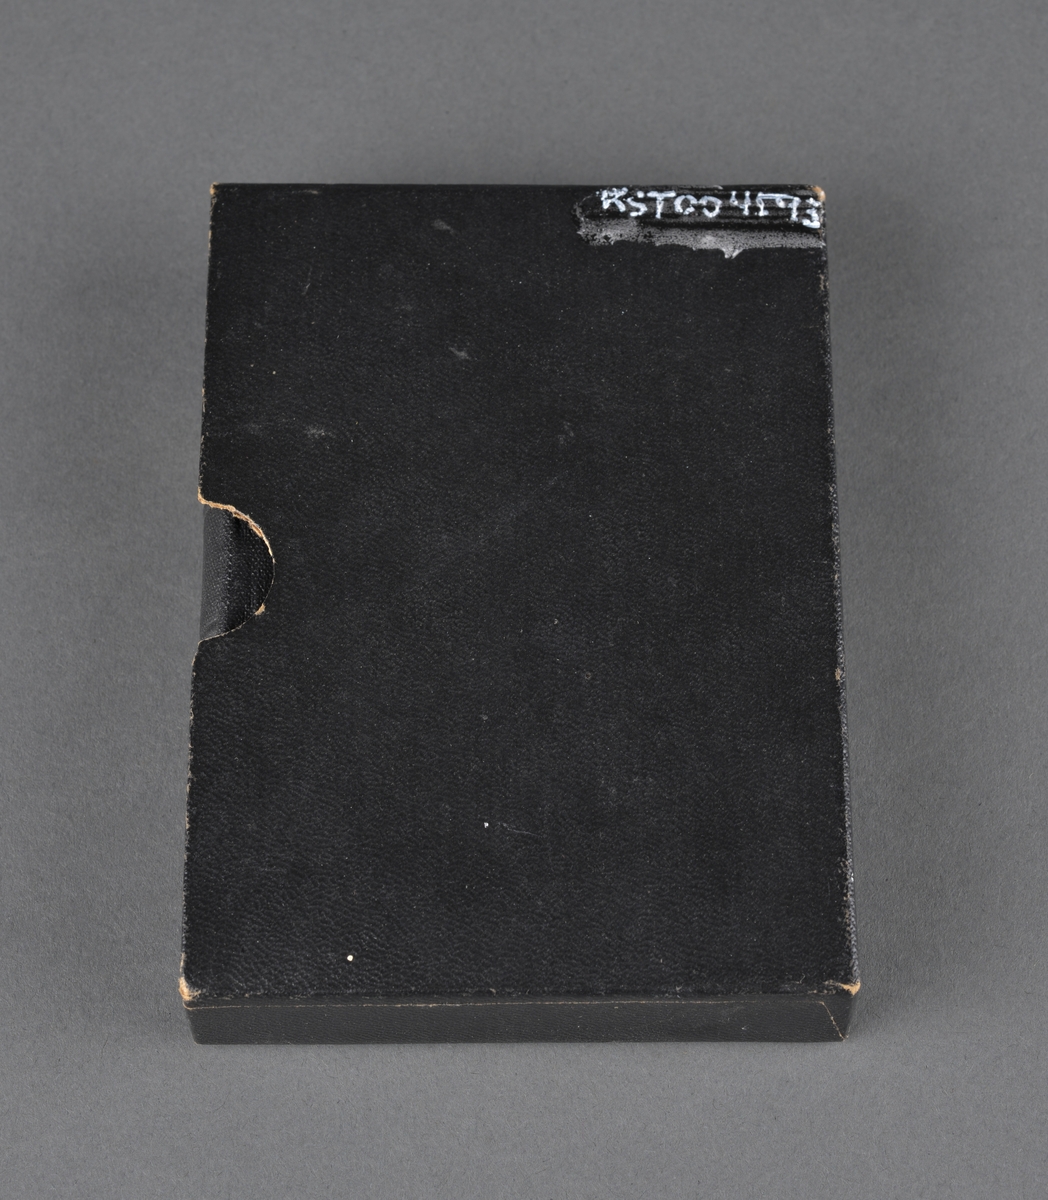 M.B. Landstads reviderte kirkesalmebok.
Ligger i en svart omslagseske

Utgitt på Andaktsbokselskapets forlag i 1947